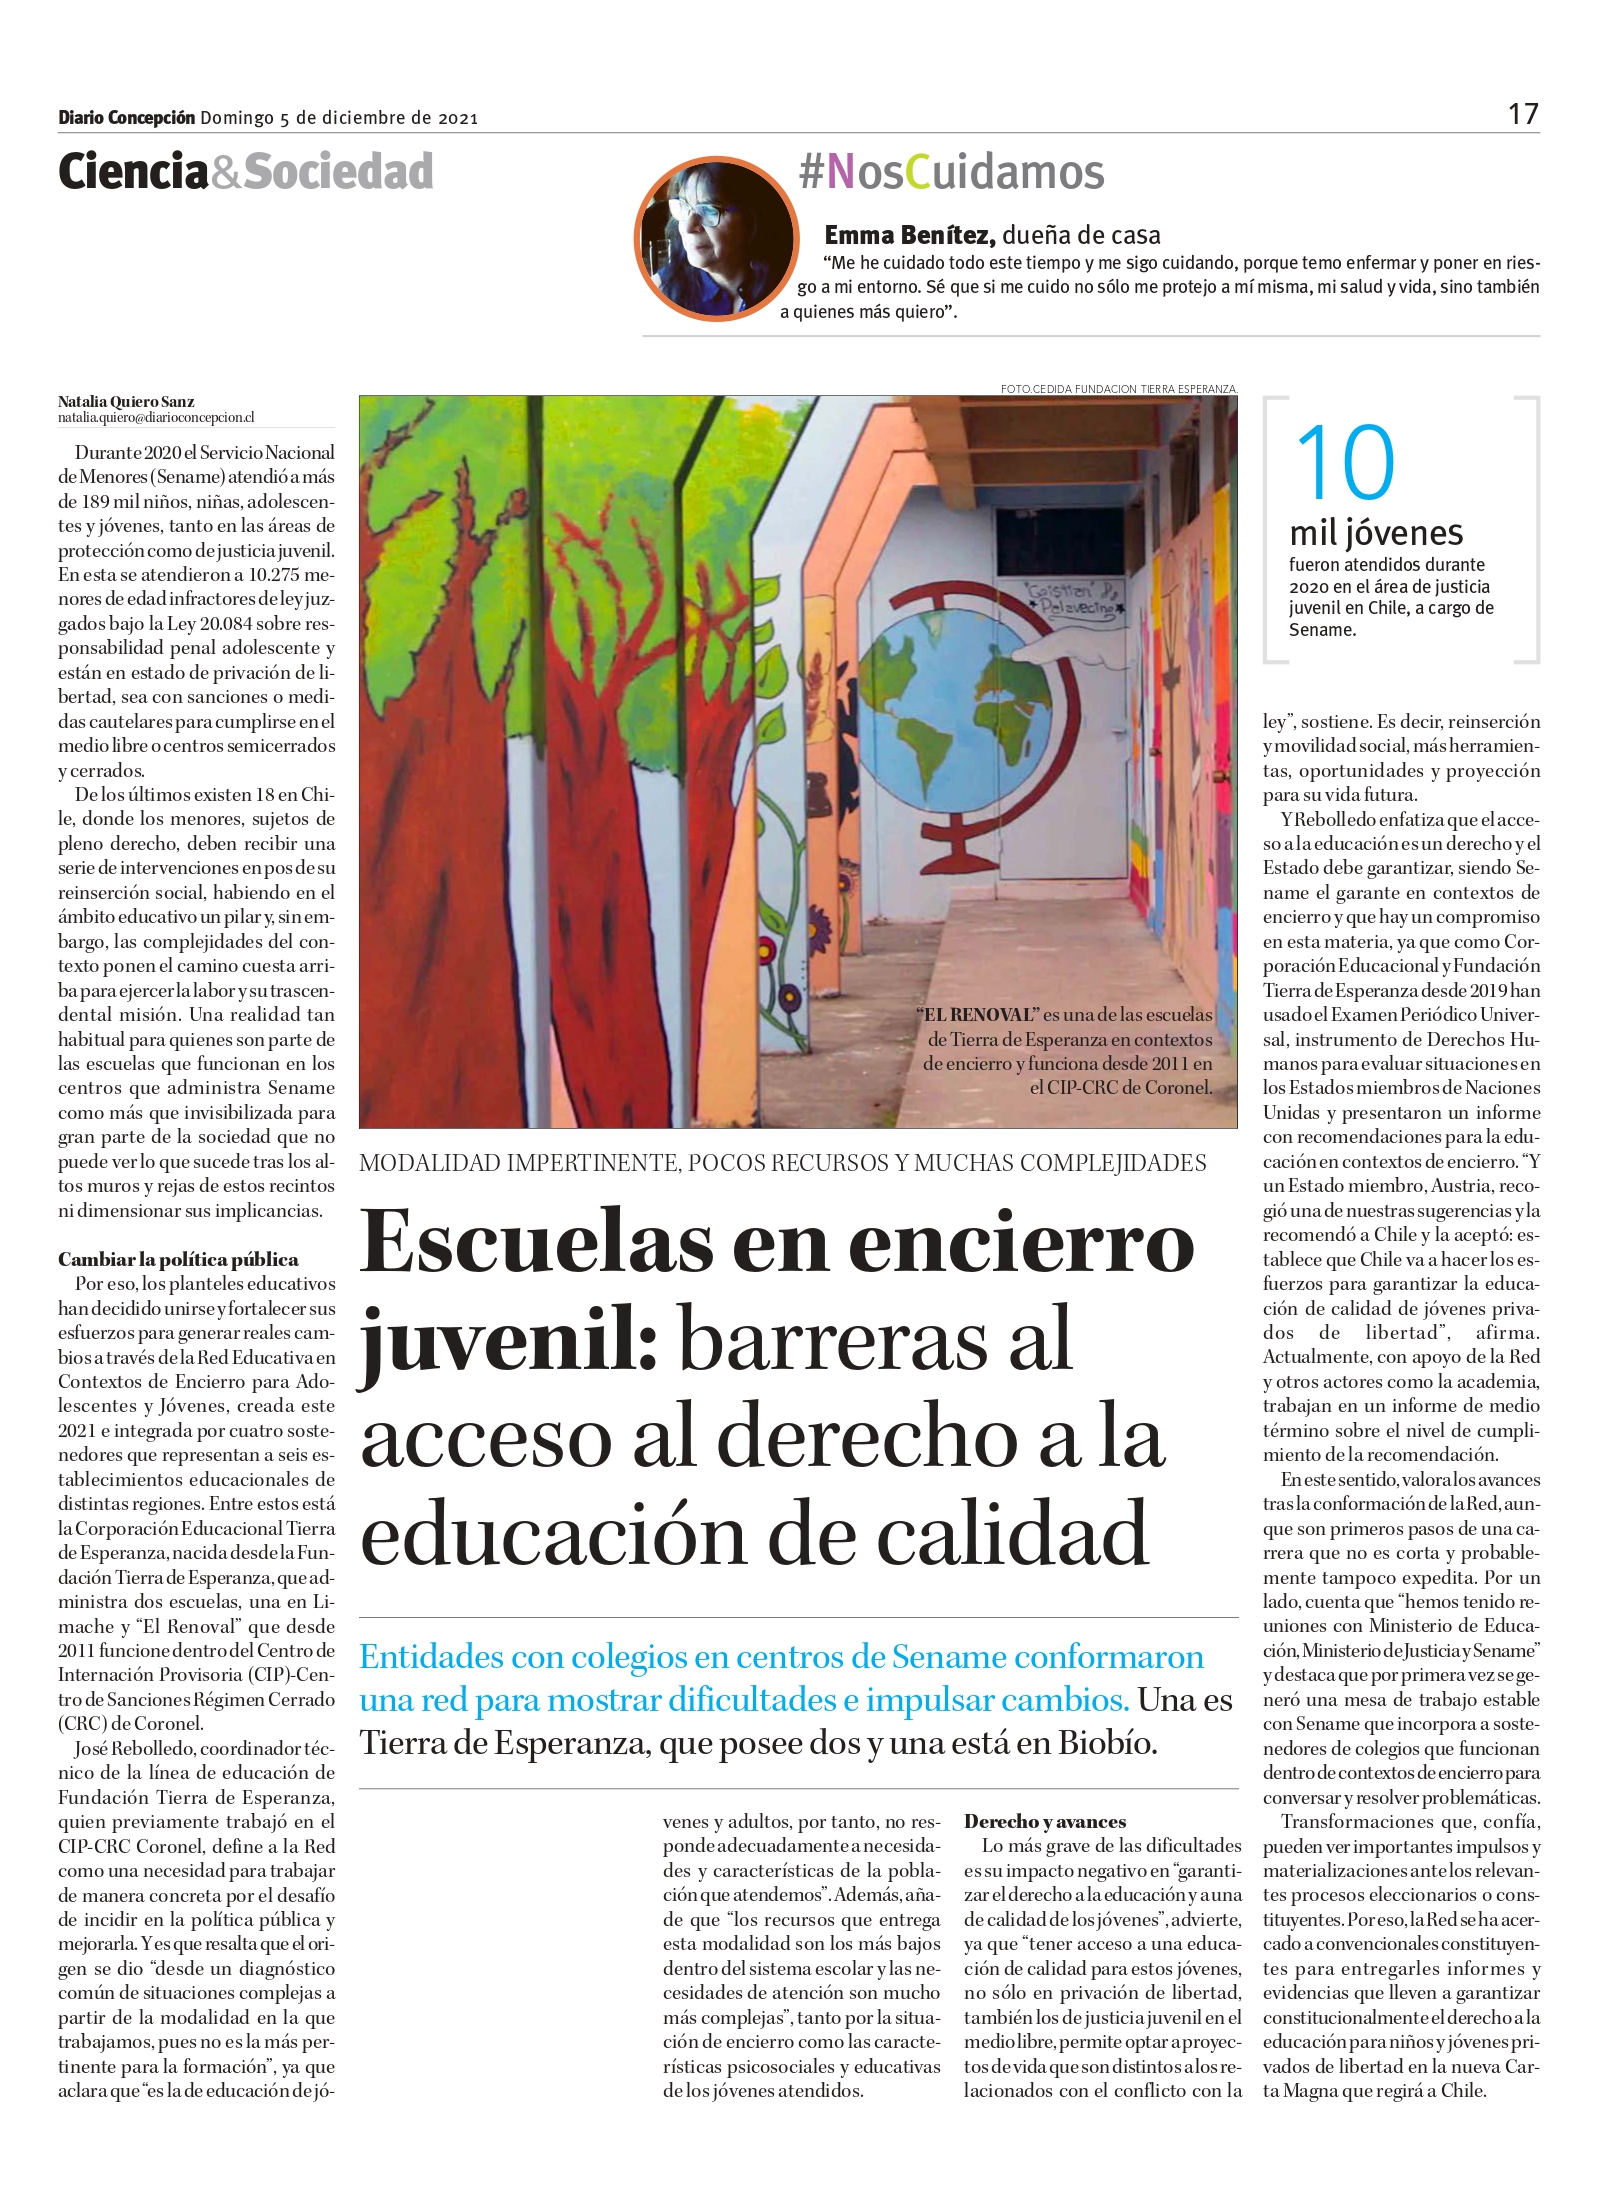 En la prensa/ Escuelas en encierro juvenil: barreras al acceso al derecho a la educación de calidad -Diario Concepción.